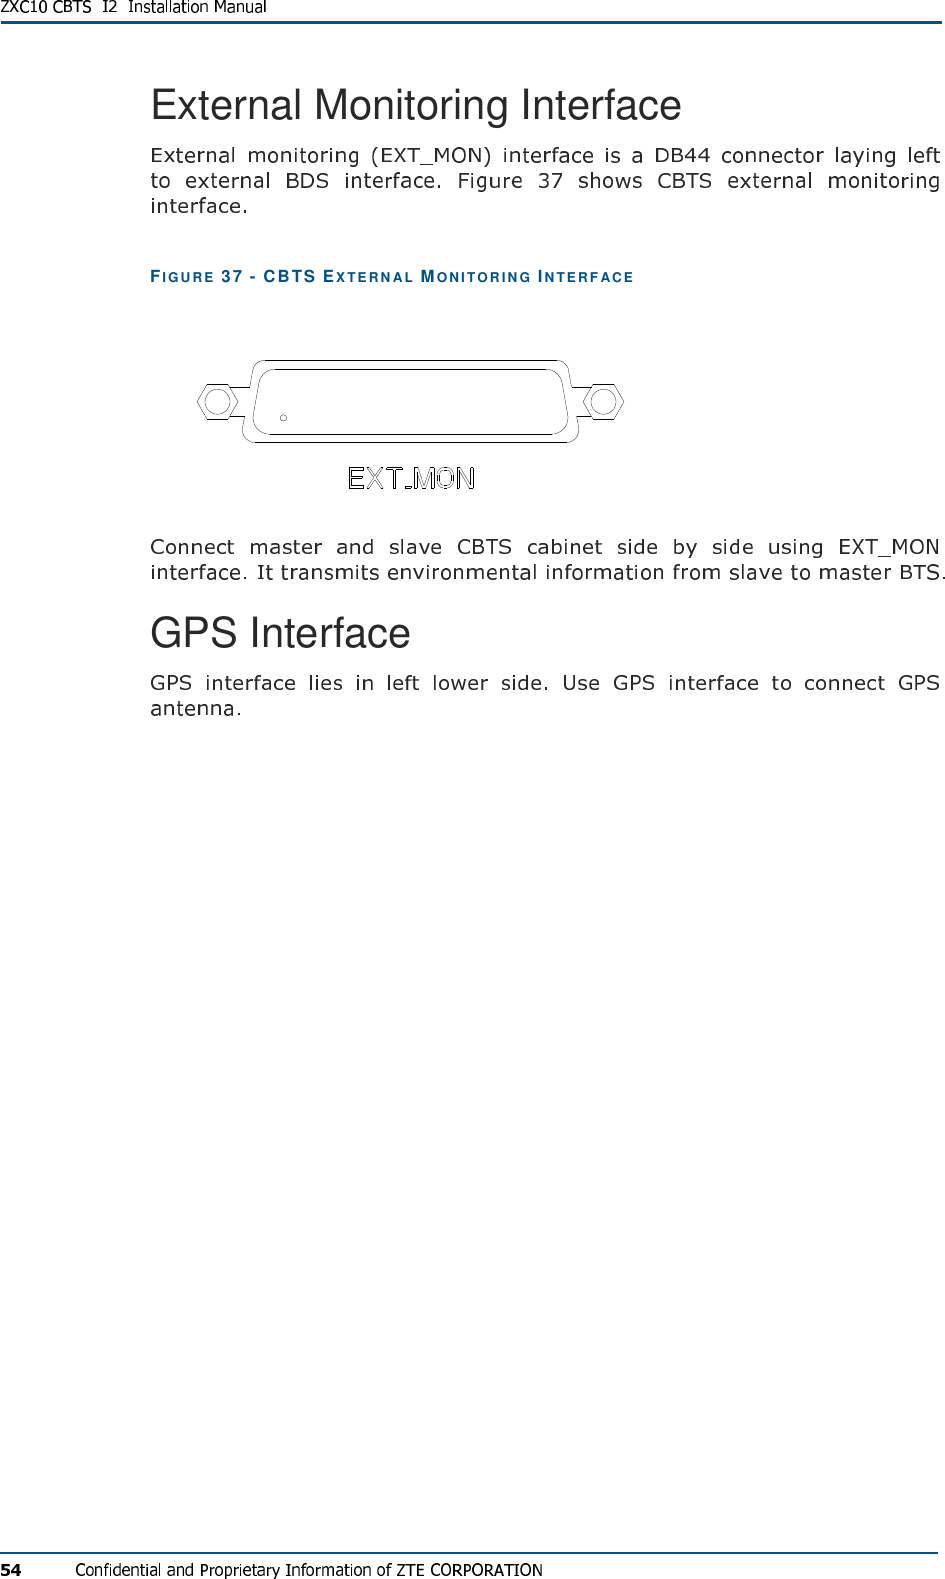 External Monitoring Interface FIG U R E   37 - CBTS EX T E R N AL   MON I T O R I N G  IN T E R F A CE   GPS Interface 